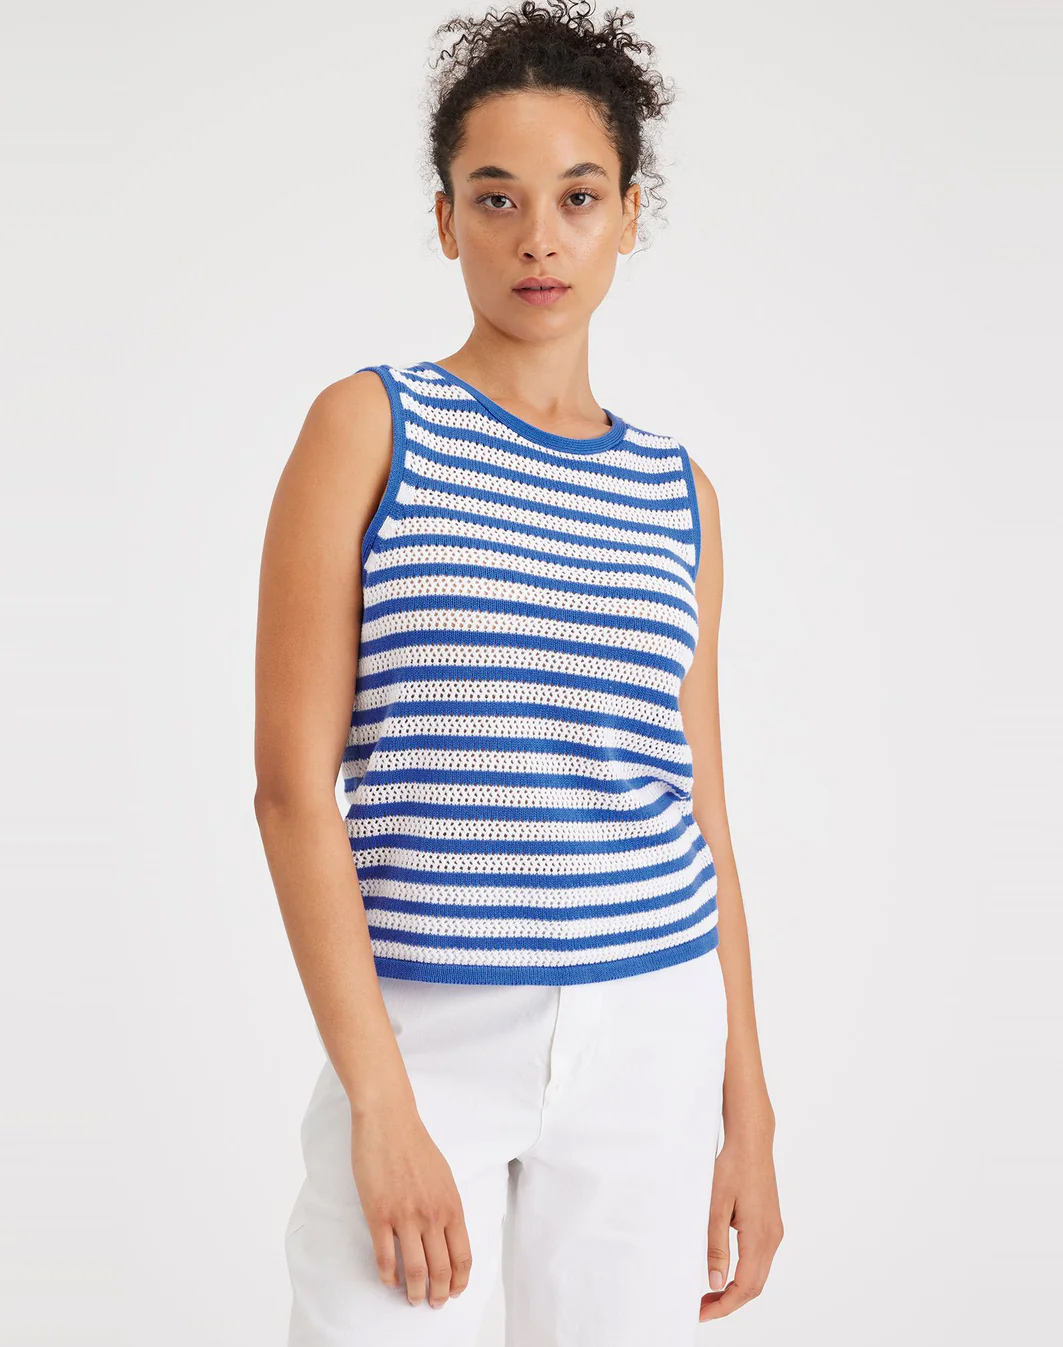 Dockers samarreta de dona sense mànigues A6985-0002 blanca amb ratlles blaves